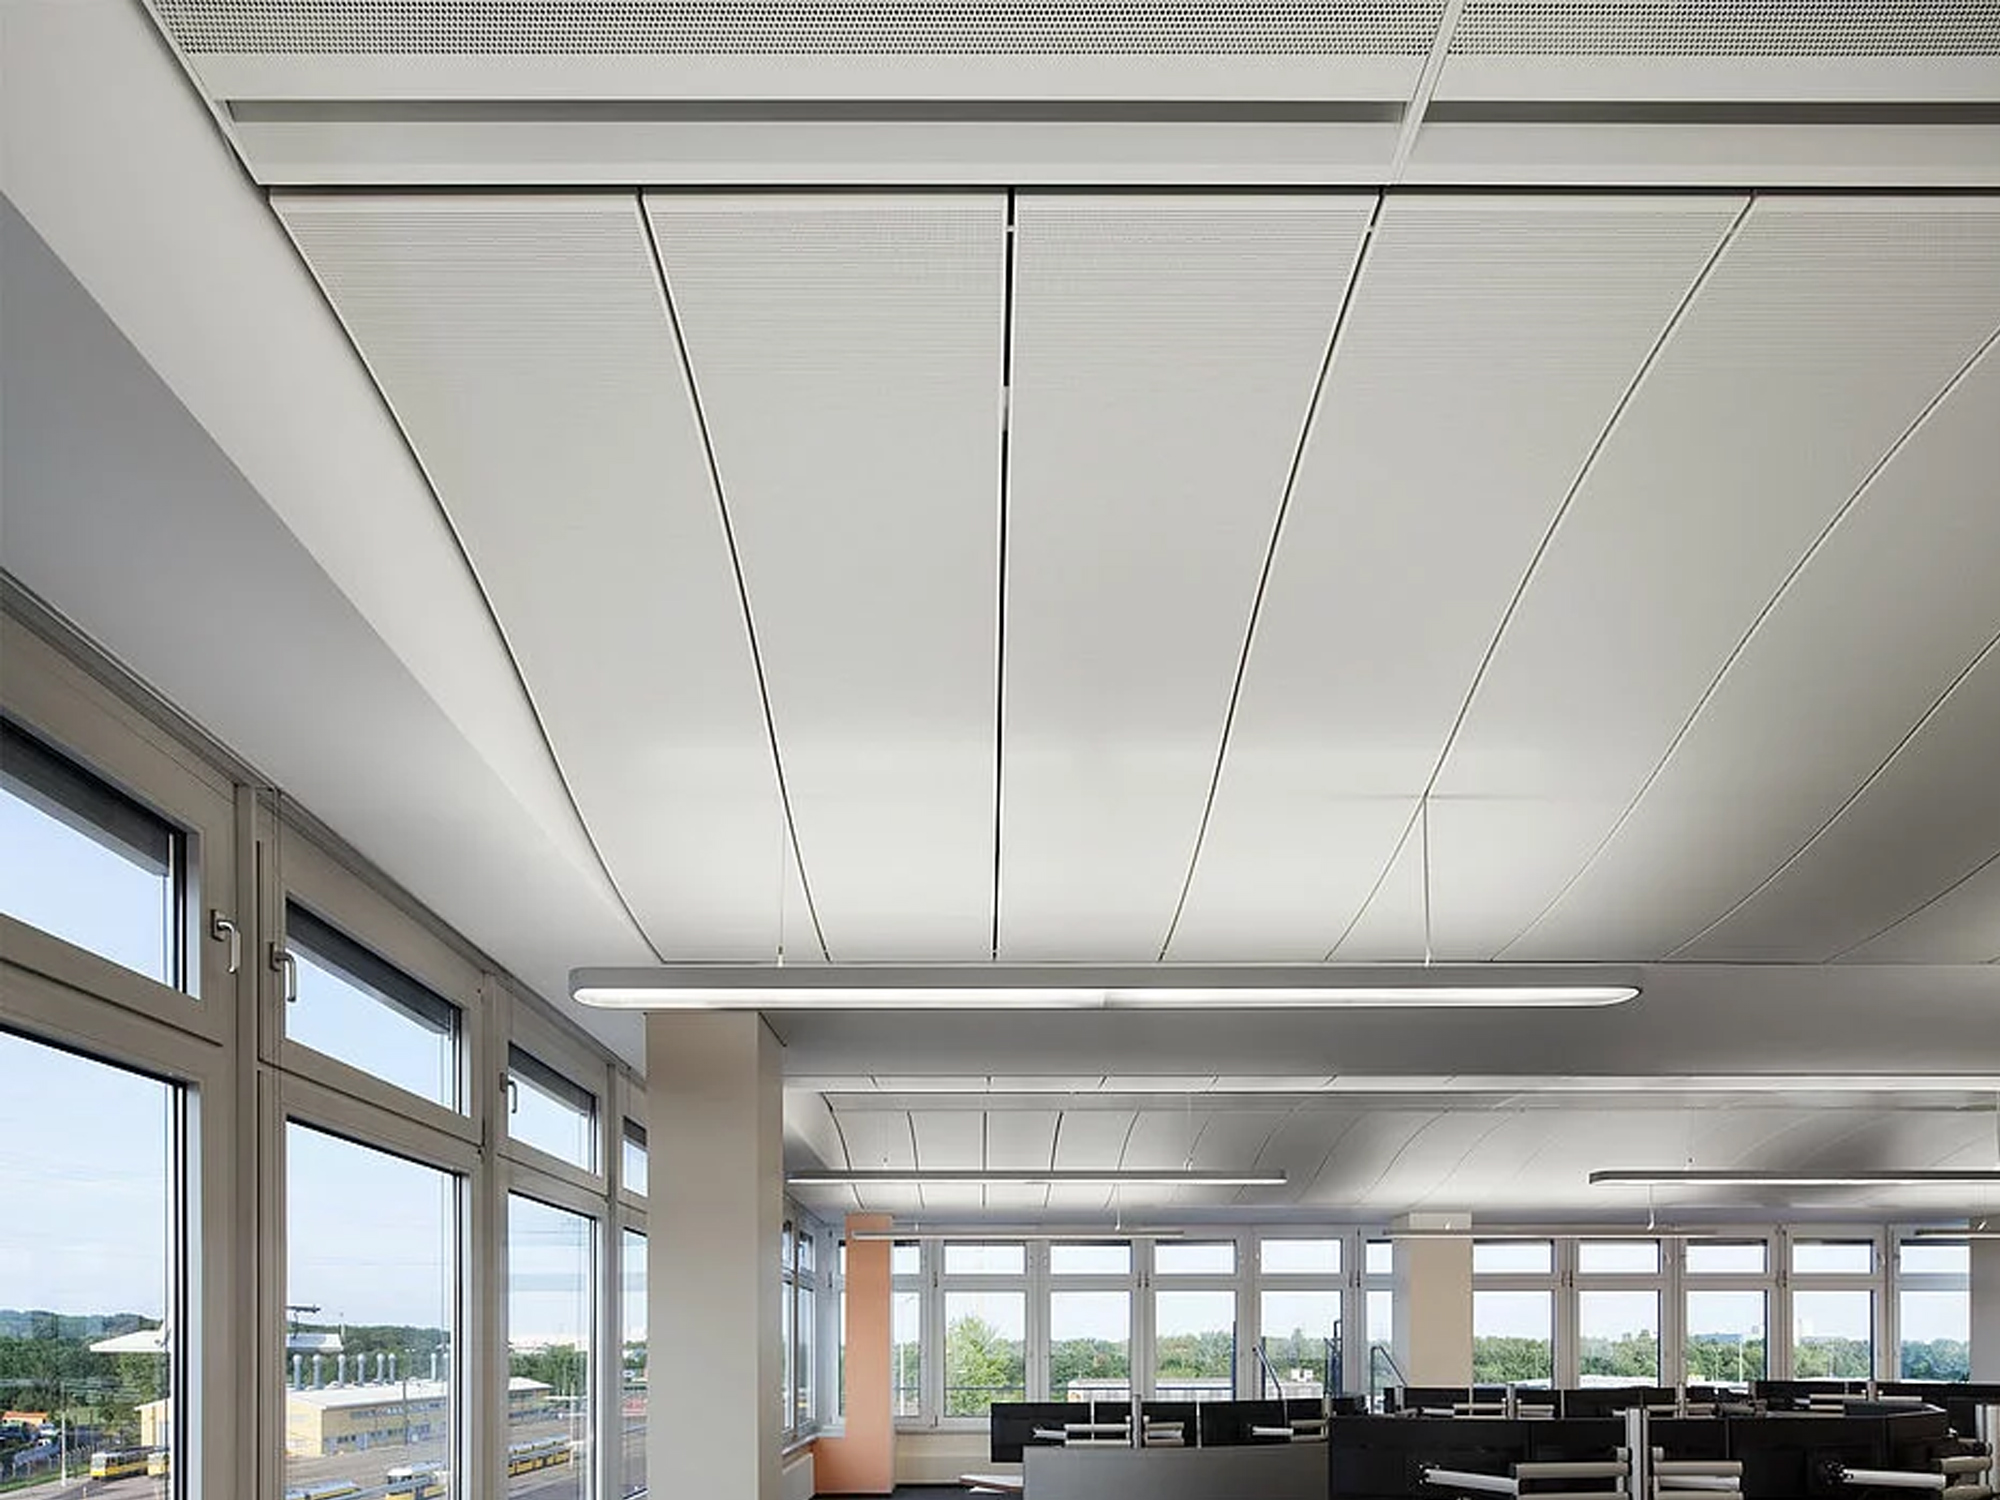 Control centre Perforated Aluminum Panel METAL PANELS Aluminum False Ceiling Panel Aluminum Metal Ceiling